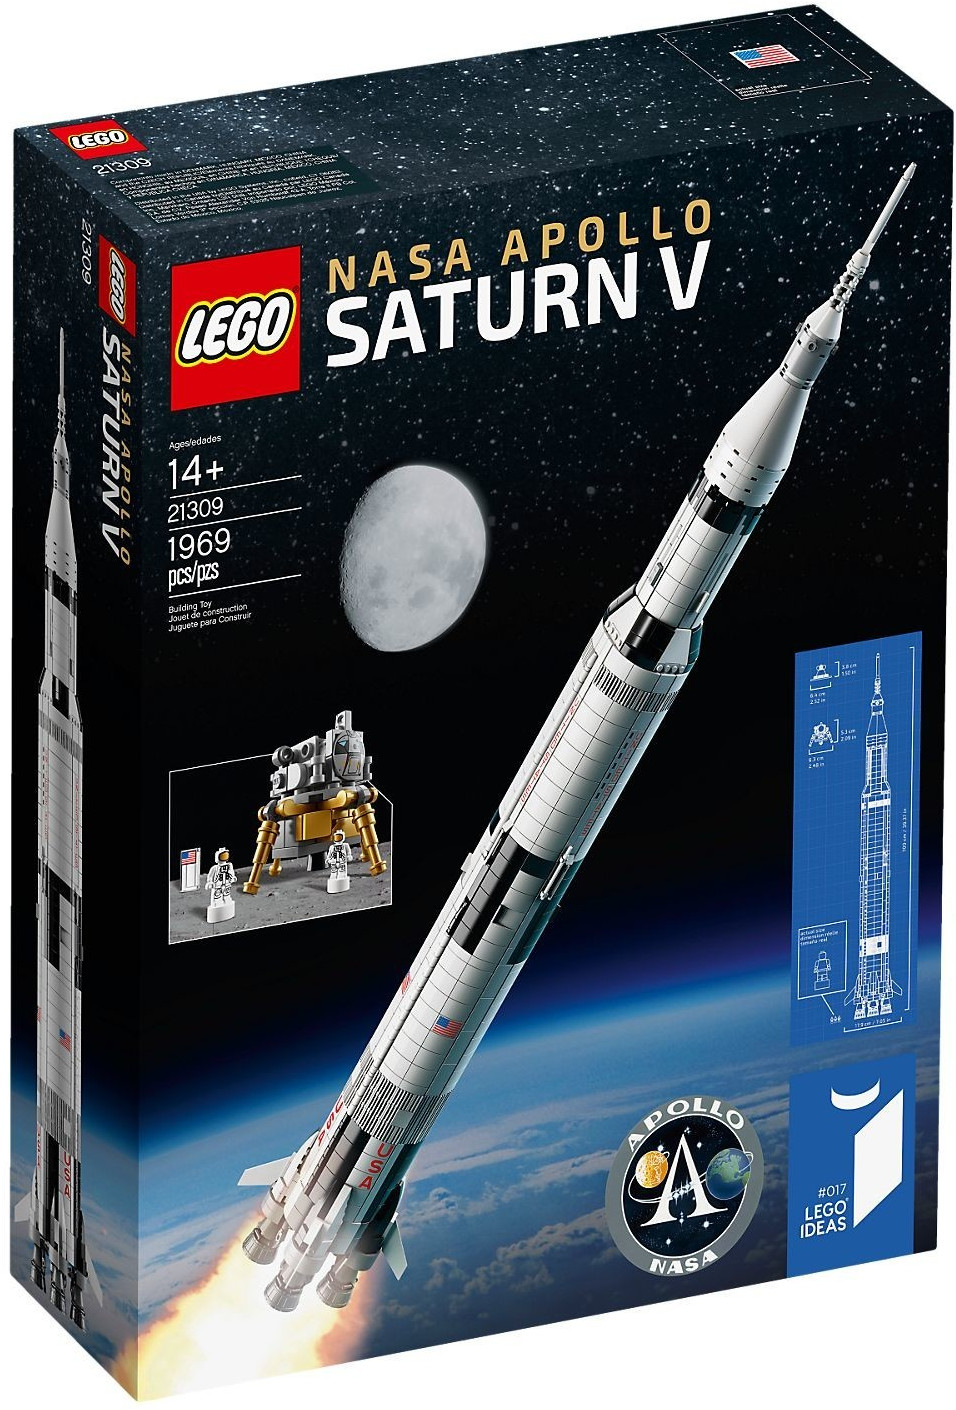 Kép a LEGO 21309 Nasa Apollo Saturn V